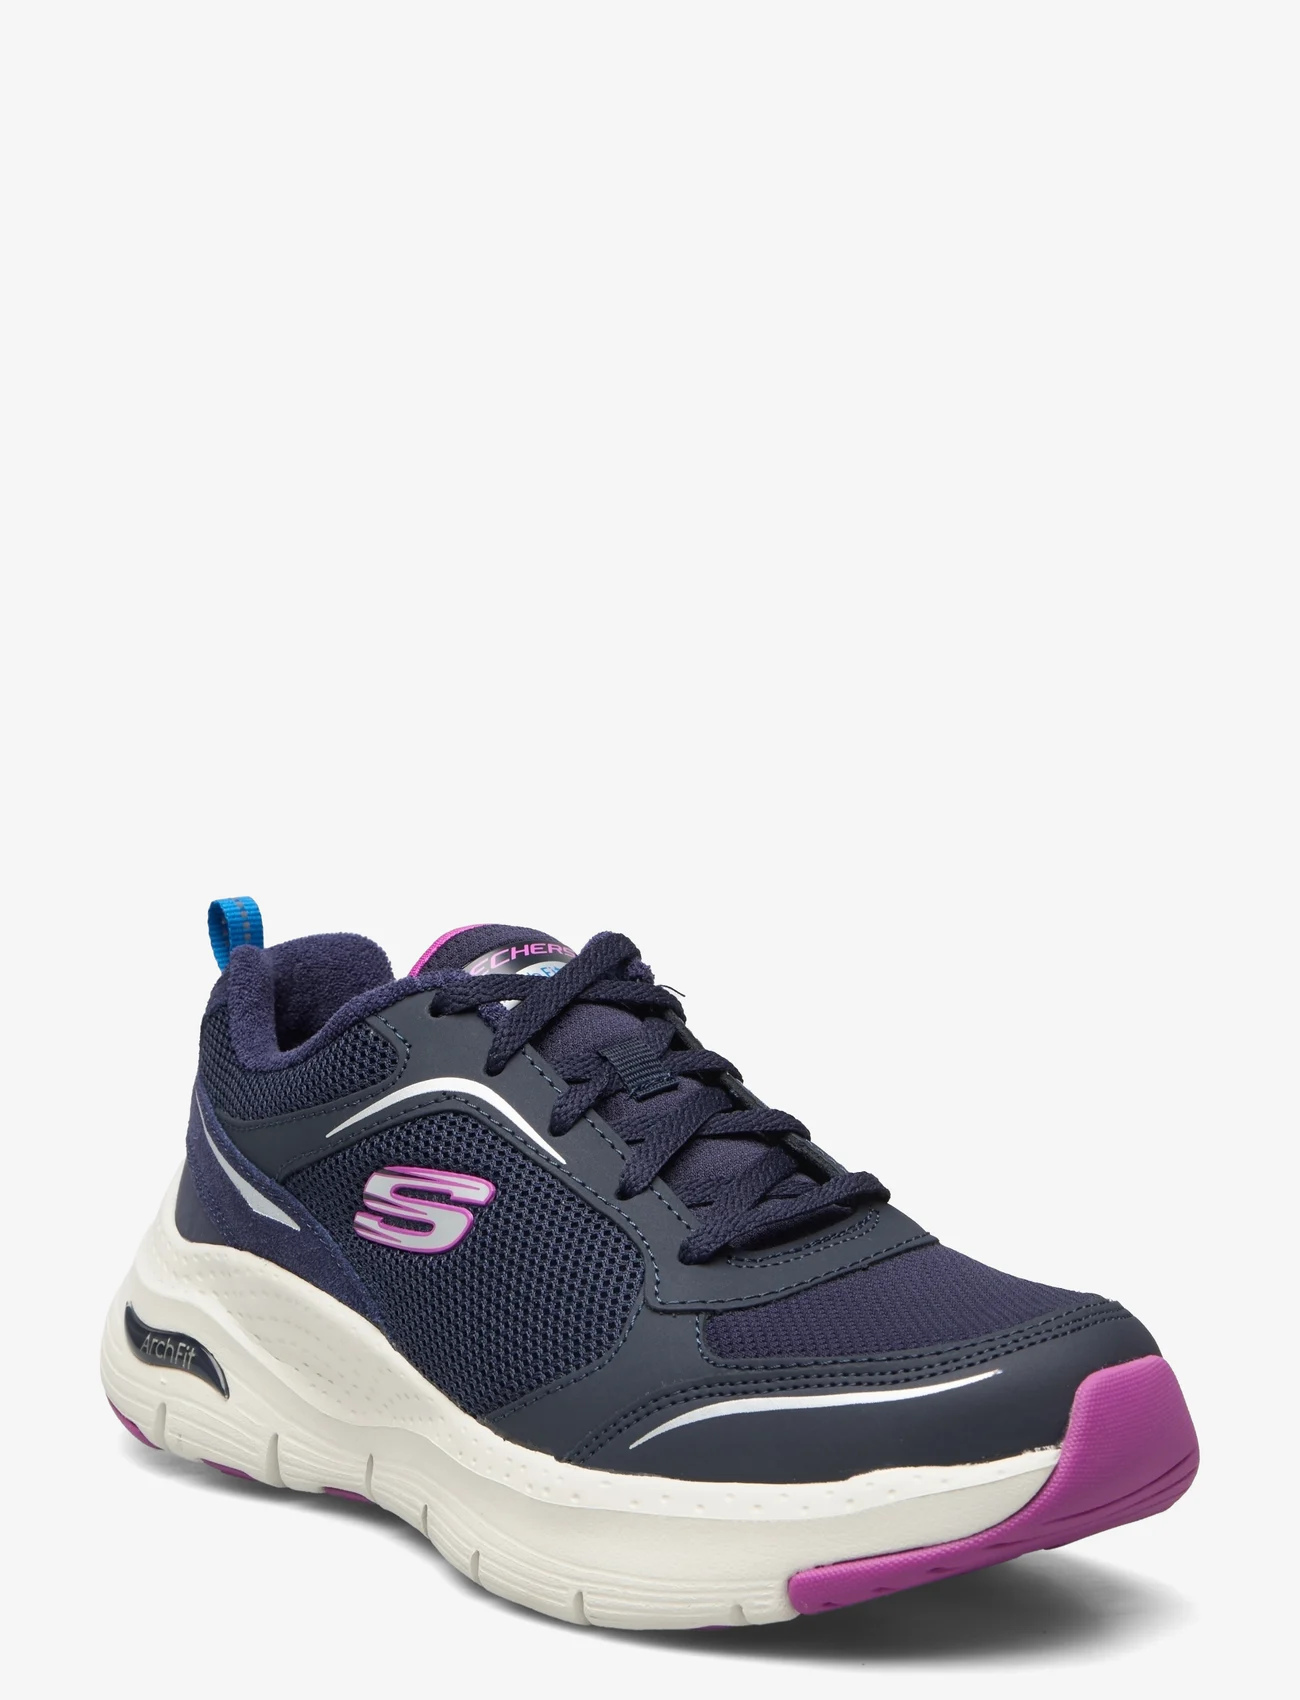 Skechers - Womens Arch Fit - Gentle Stride - låga sneakers - nvpr navy purple - 0